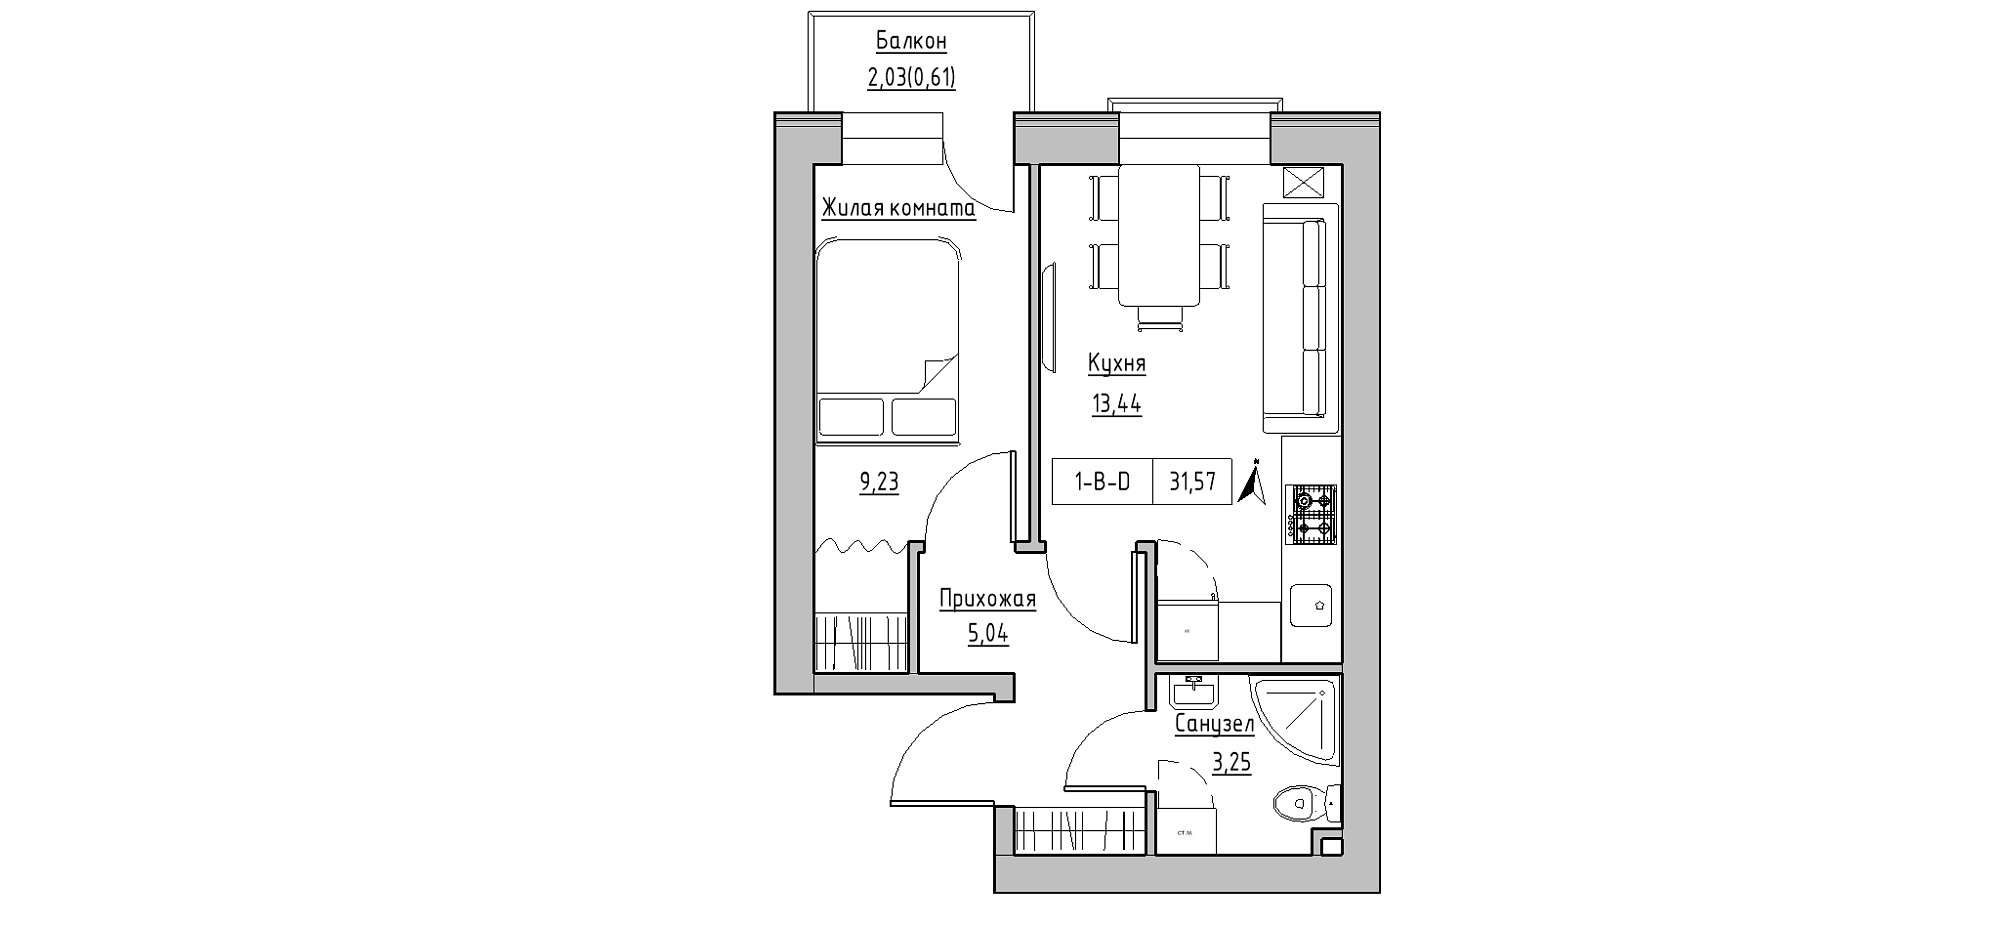 Планировка 1-к квартира площей 31.57м2, KS-020-03/0003.